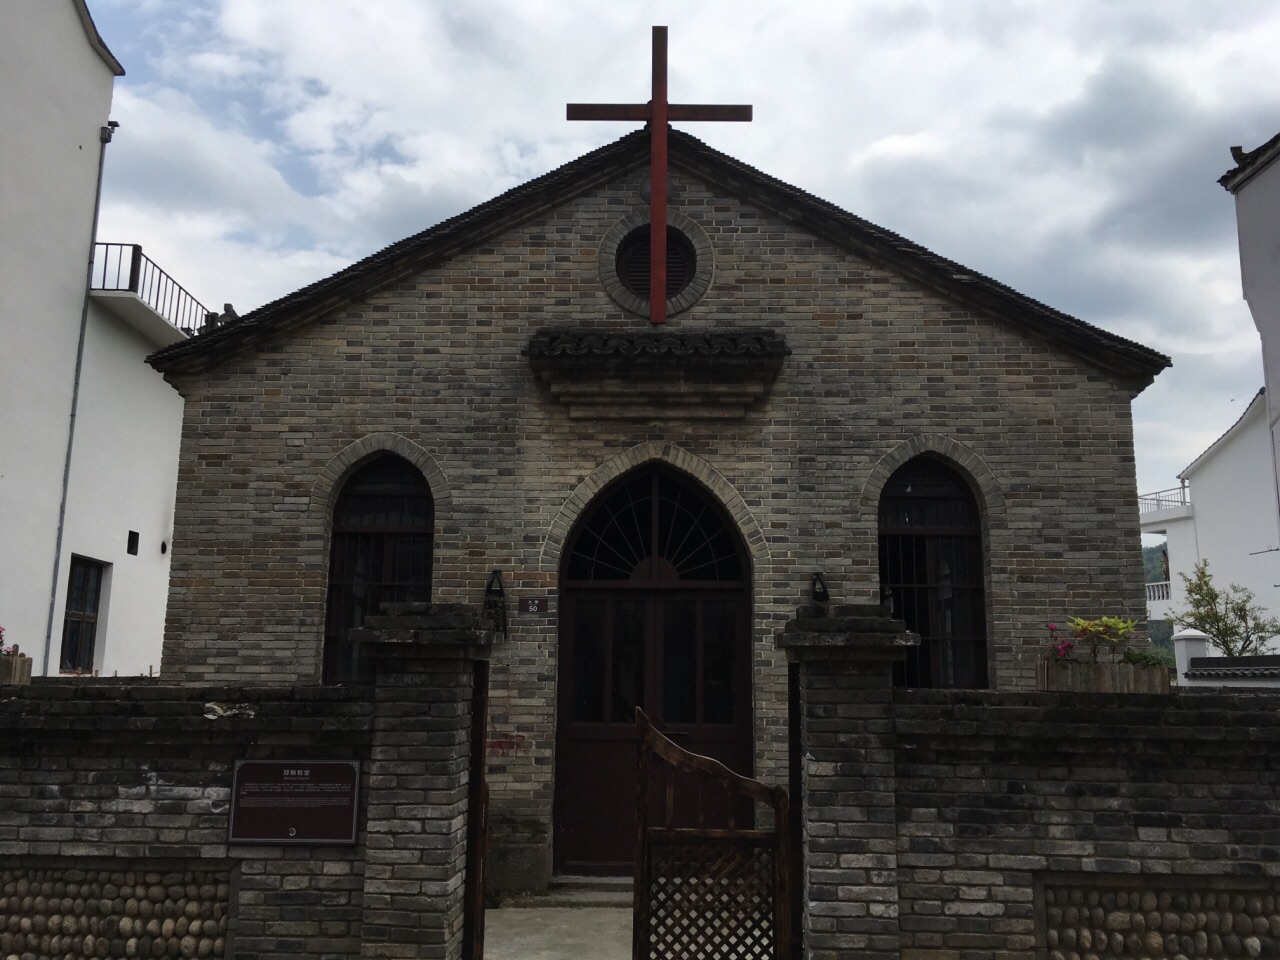 中国农村教堂图片图片